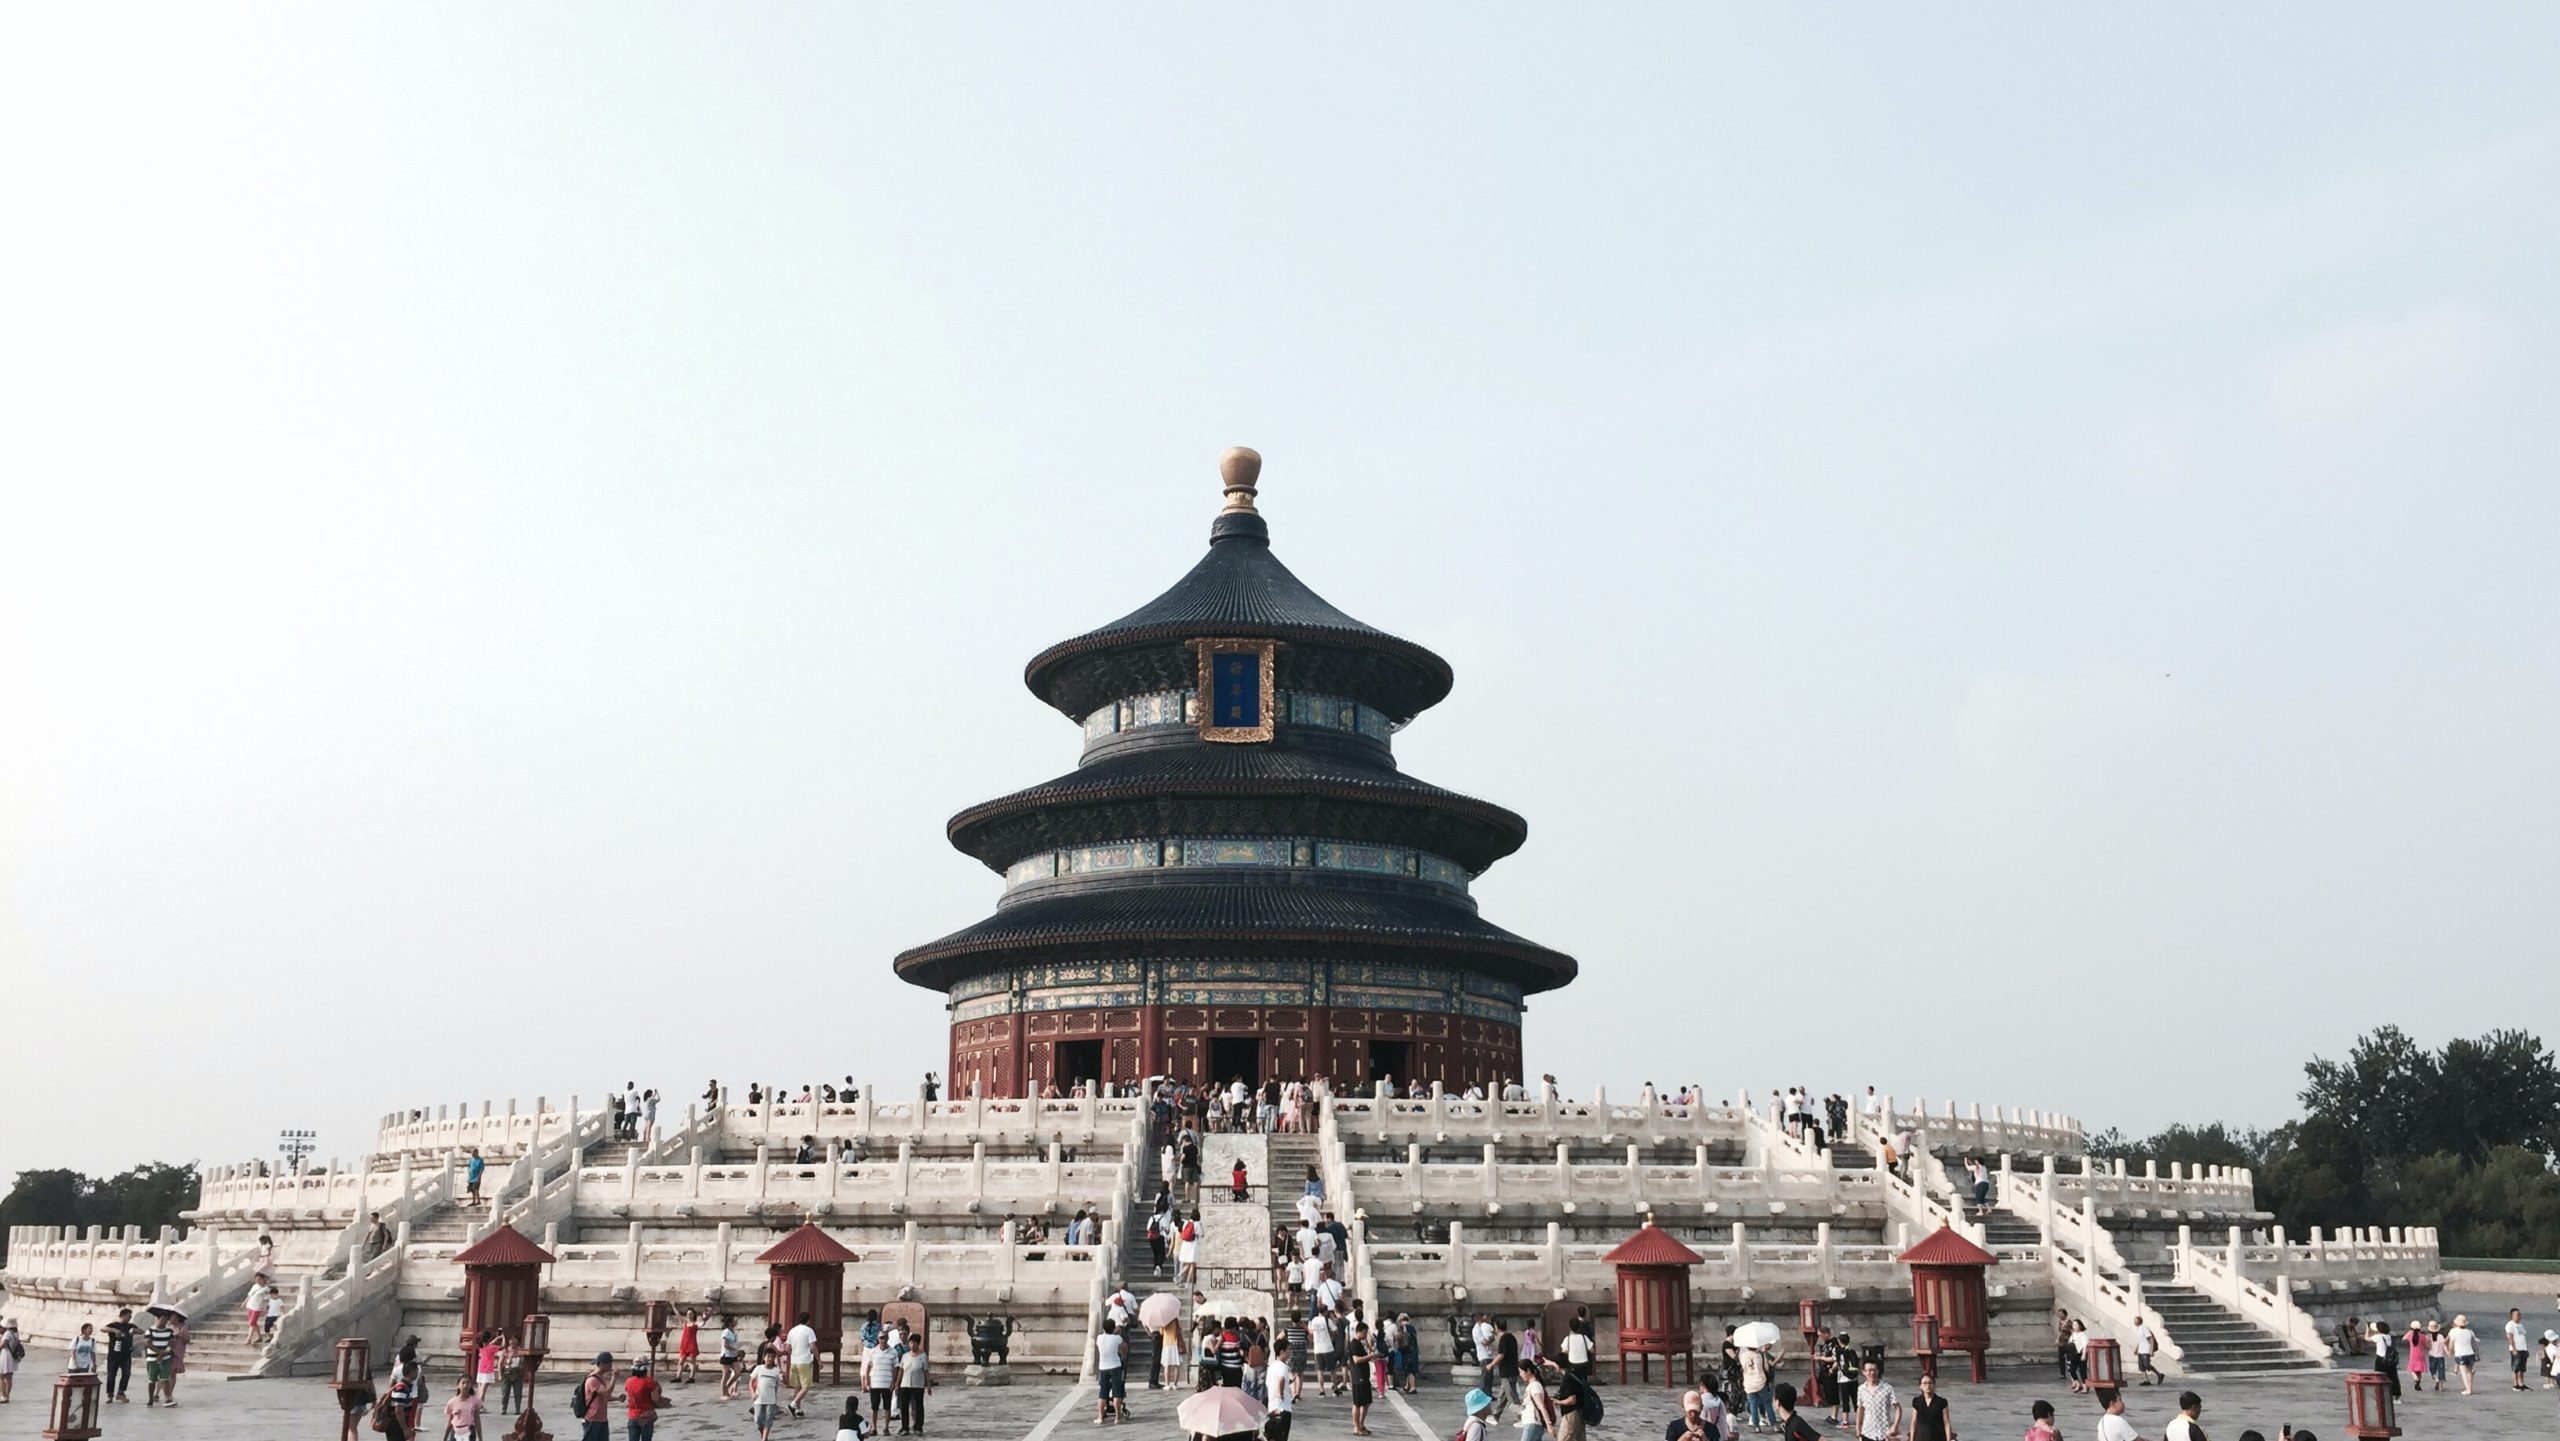 Beijing Temple of heaven